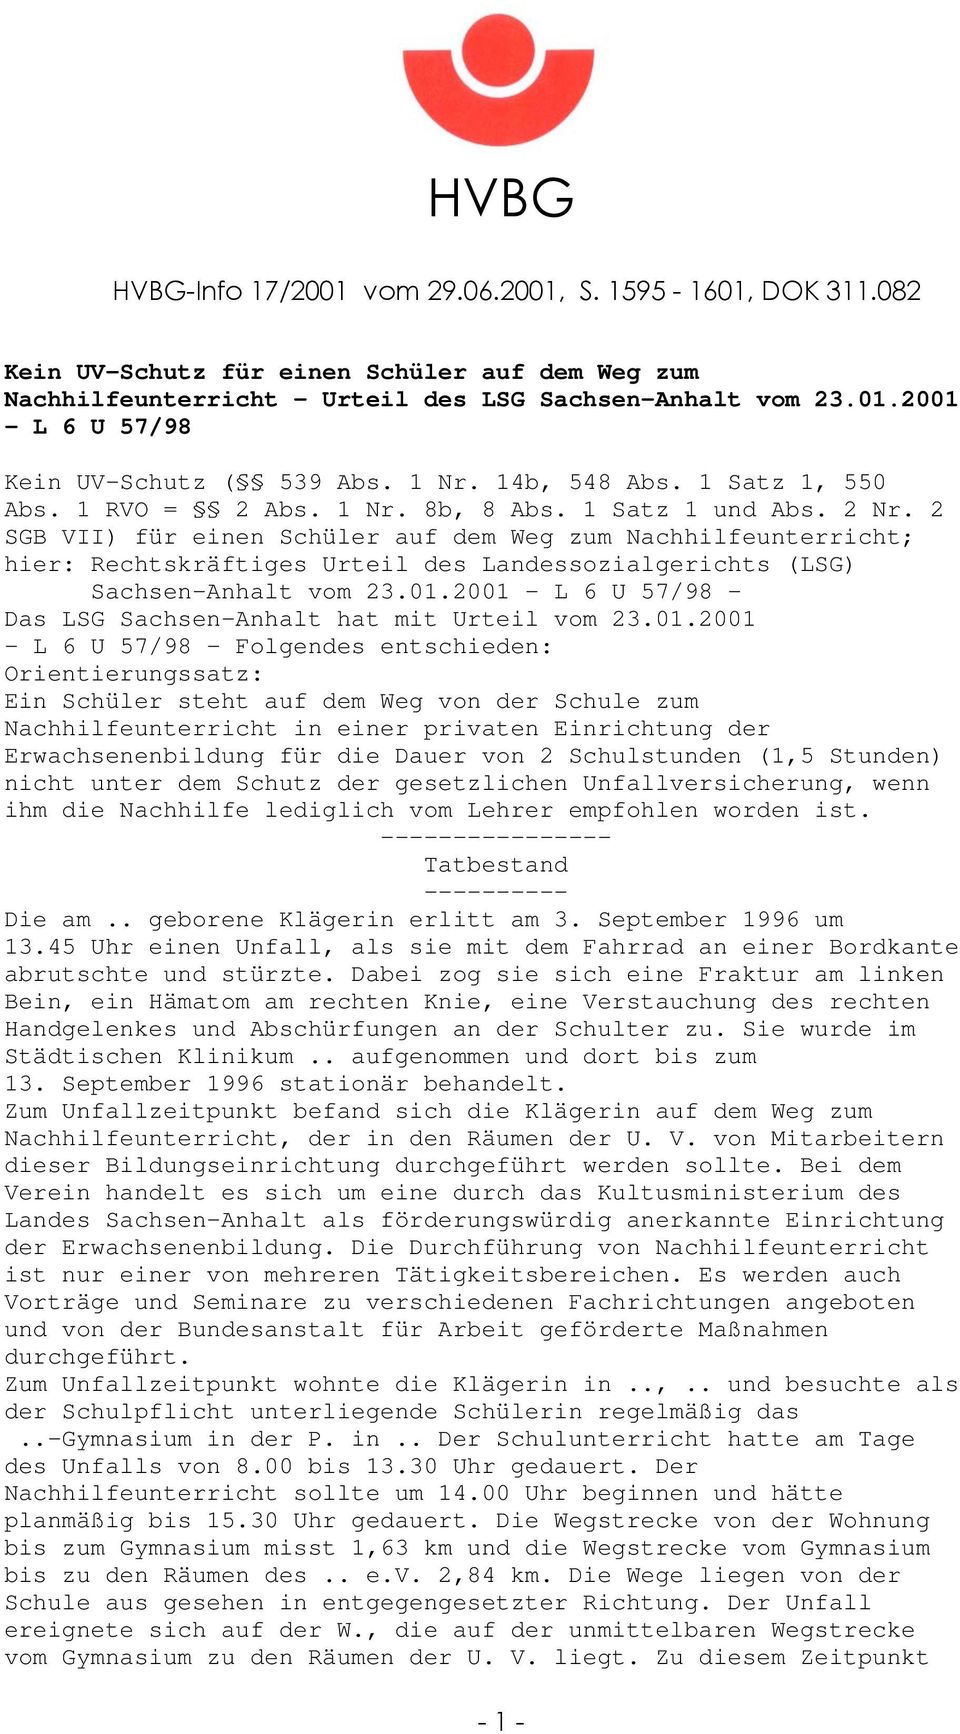 2 SGB VII) für einen Schüler auf dem Weg zum Nachhilfeunterricht; hier: Rechtskräftiges Urteil des Landessozialgerichts (LSG) Sachsen-Anhalt vom 23.01.